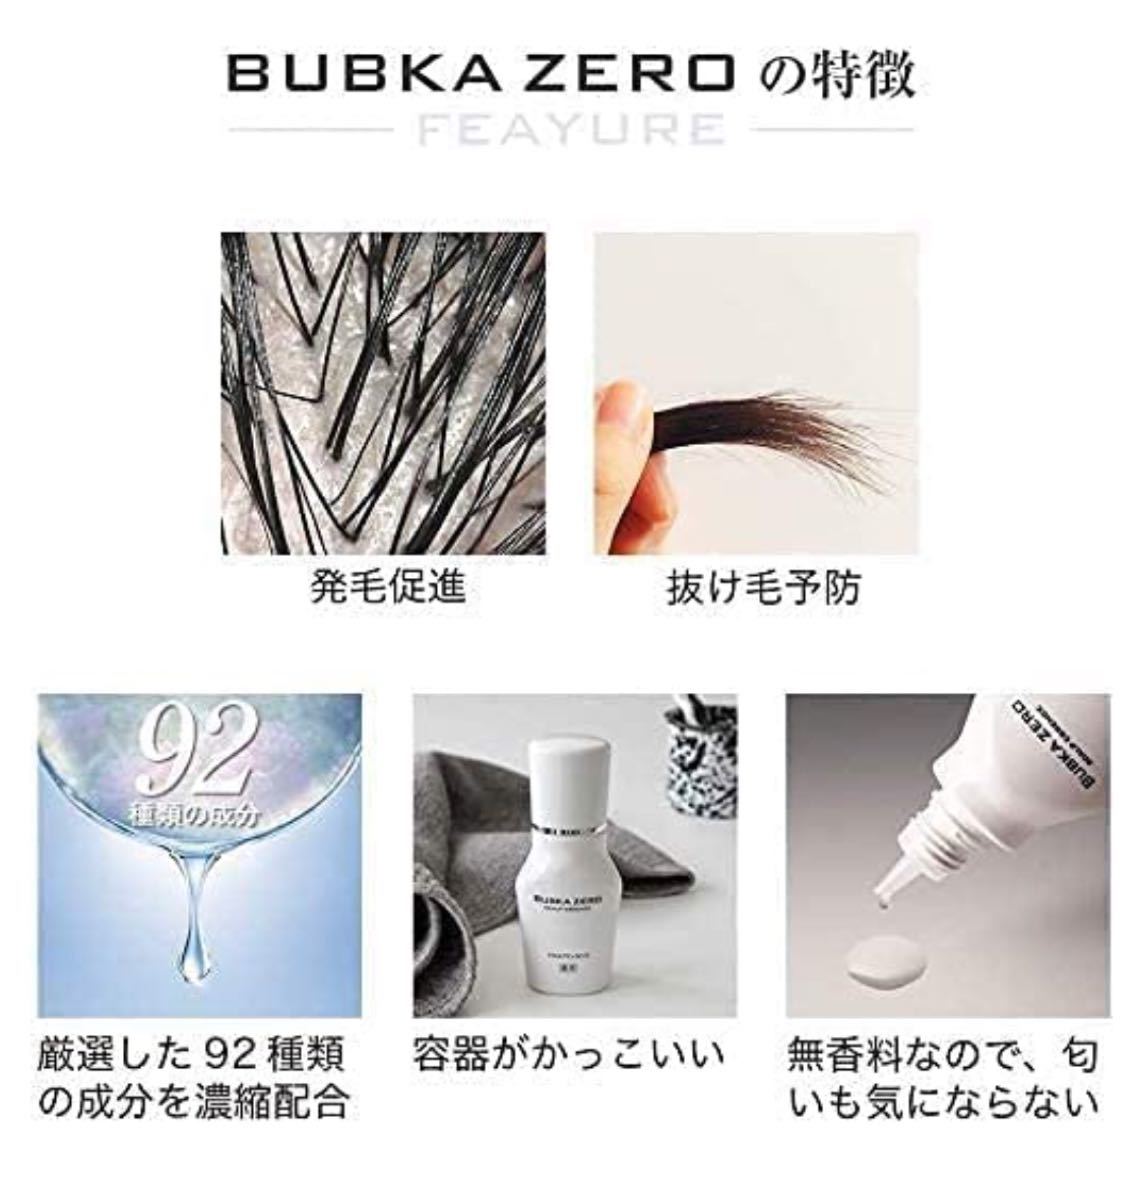 【送料無料】BUBKA ZEROスカルプエッセンス、頭皮クレジング2本セット 育毛剤 薬用 スカルプ